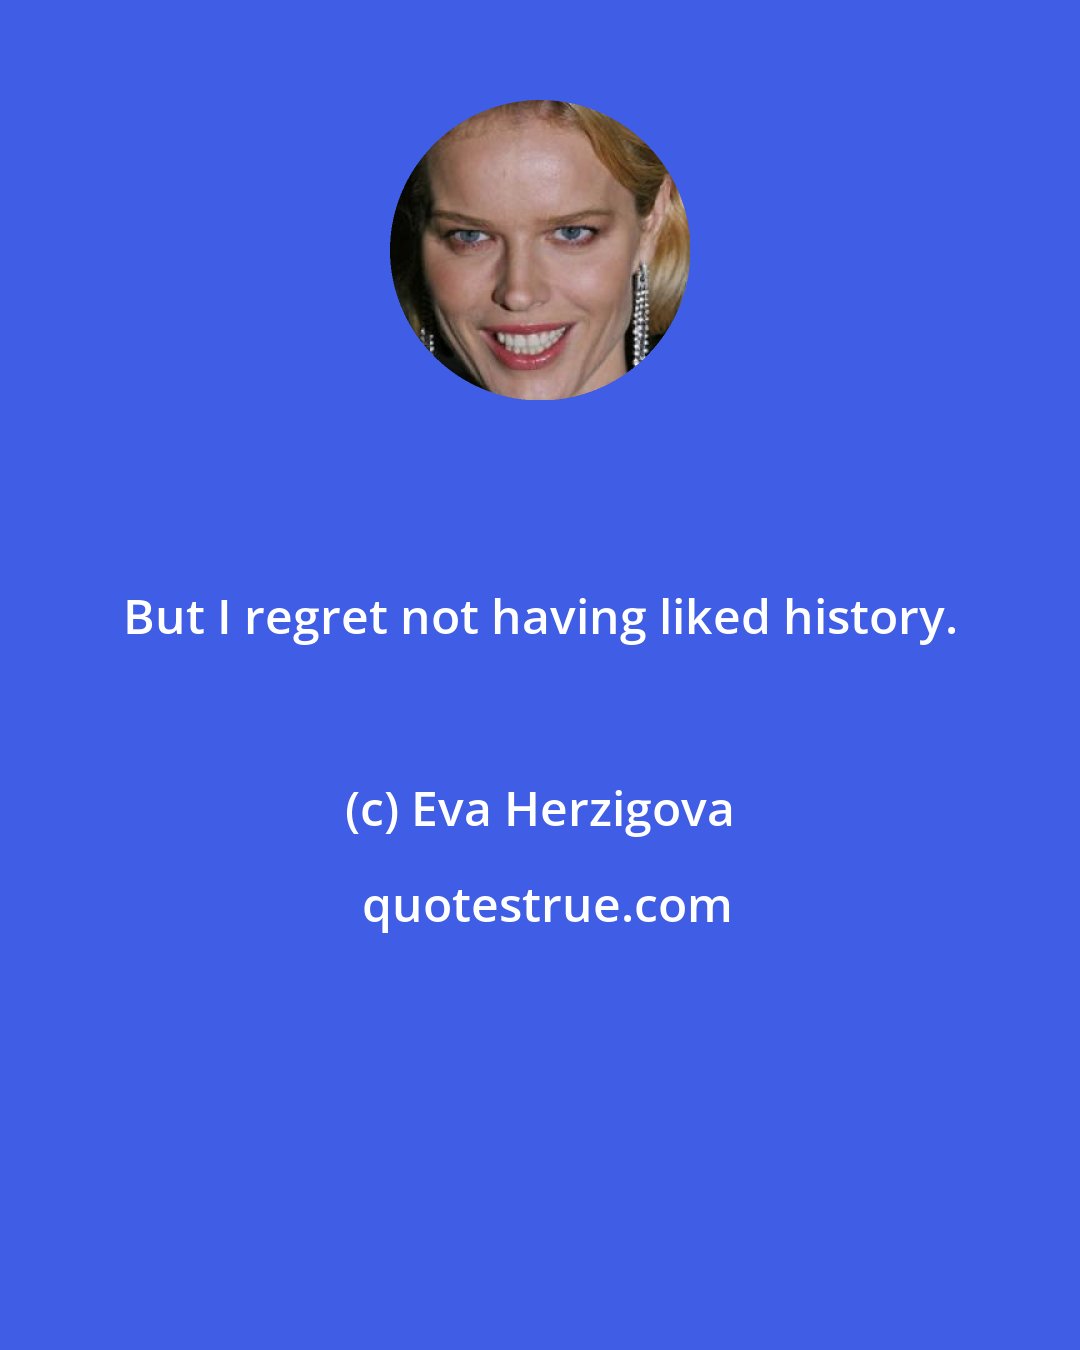 Eva Herzigova: But I regret not having liked history.